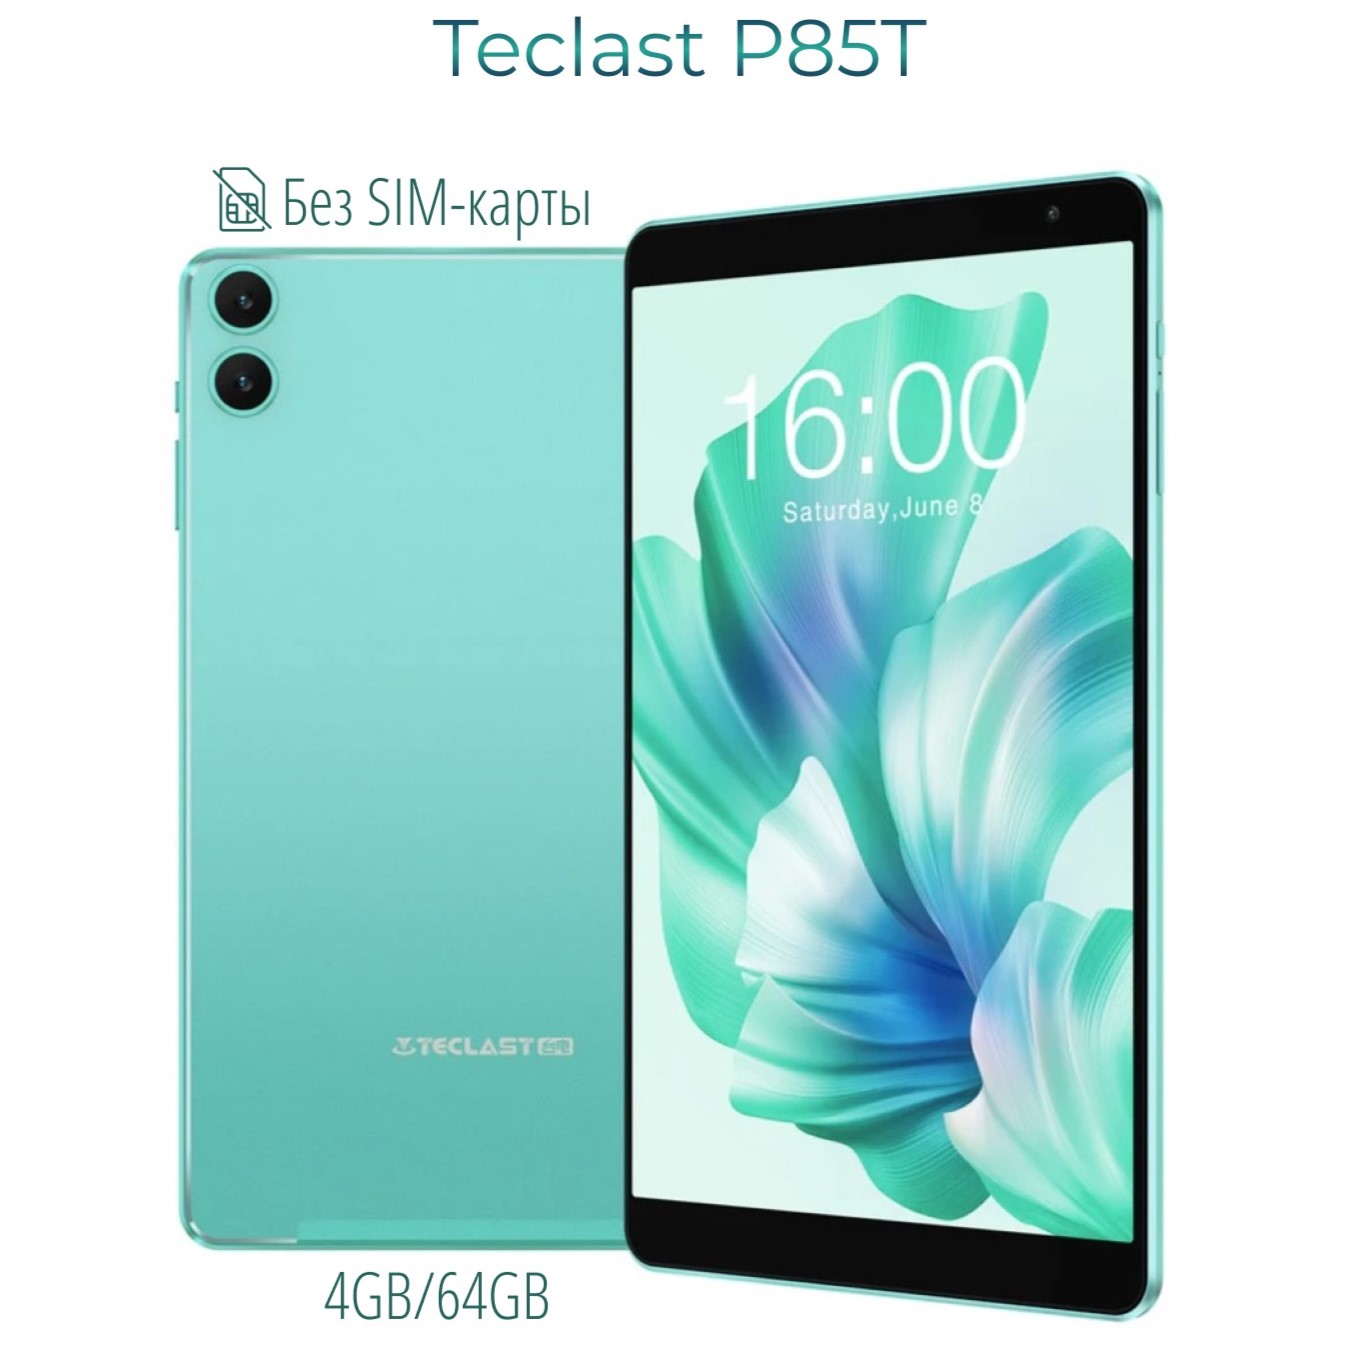 Планшет Teclast P85T 4GB/64GB белый, купить в Москве, цены в интернет-магазинах на Мегамаркет